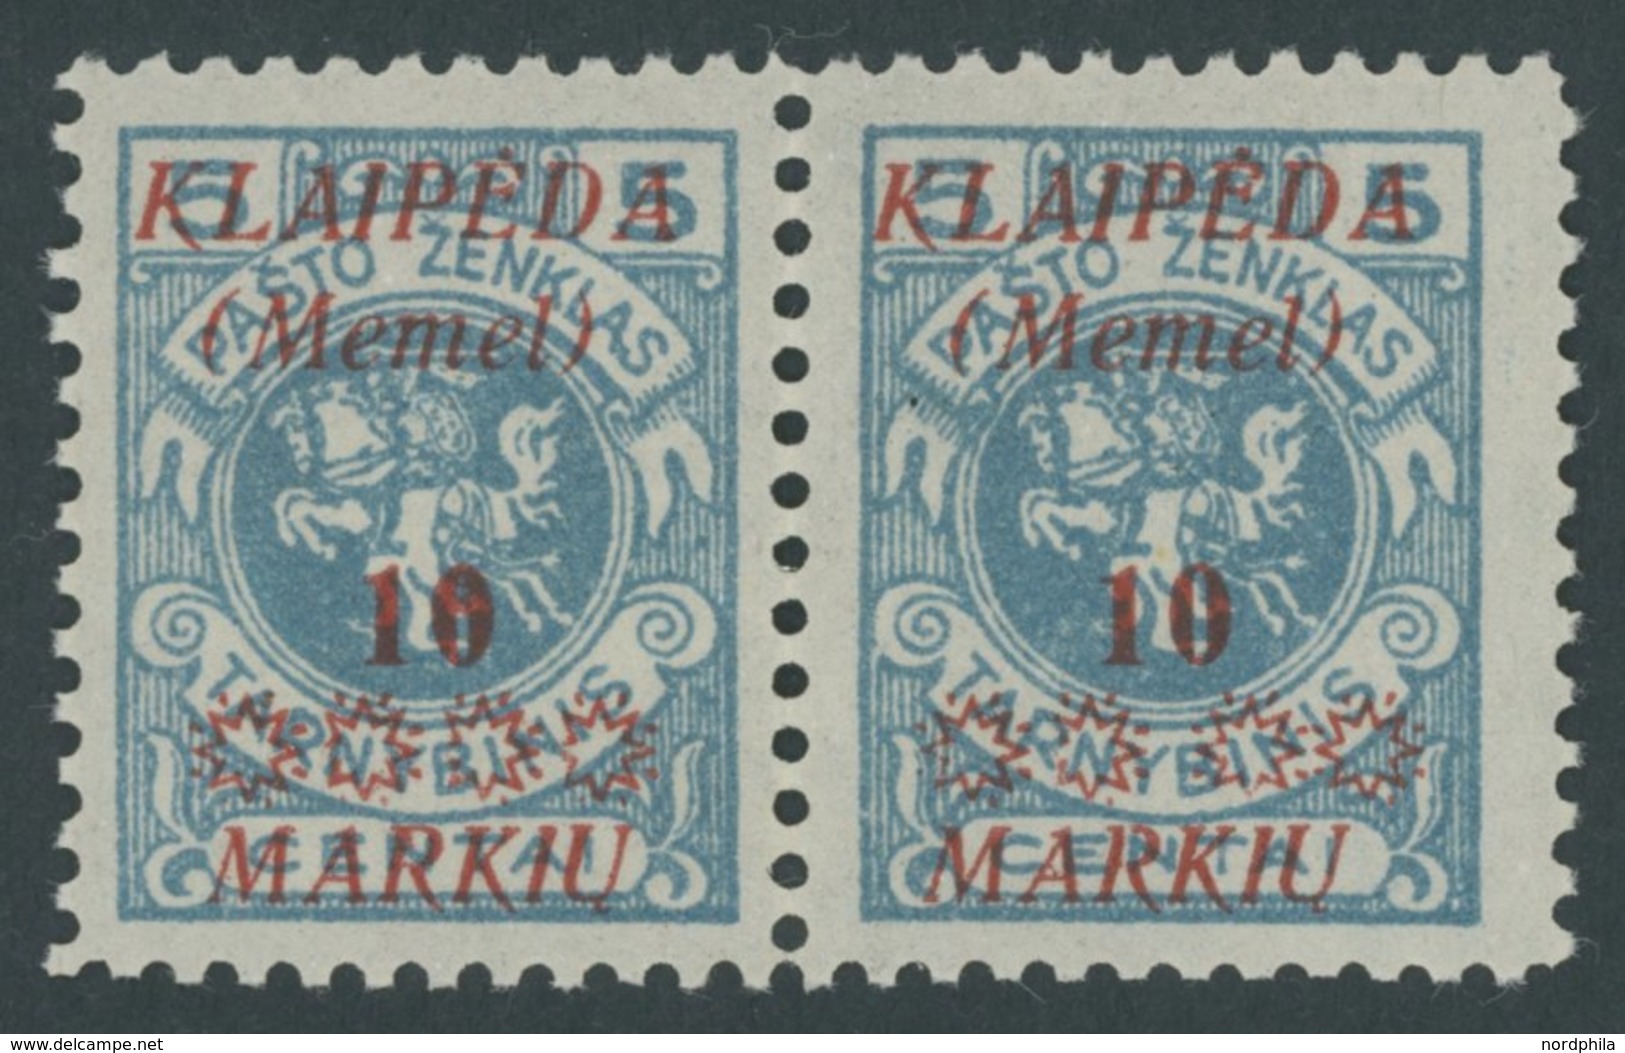 MEMELGEBIET 135II **, 1923, 10 M. Auf 5 C. Grünlichblau Im Waagerechten Paar, Rechte Marke Mit Abart Weiter Abstand Zwis - Klaipeda 1923